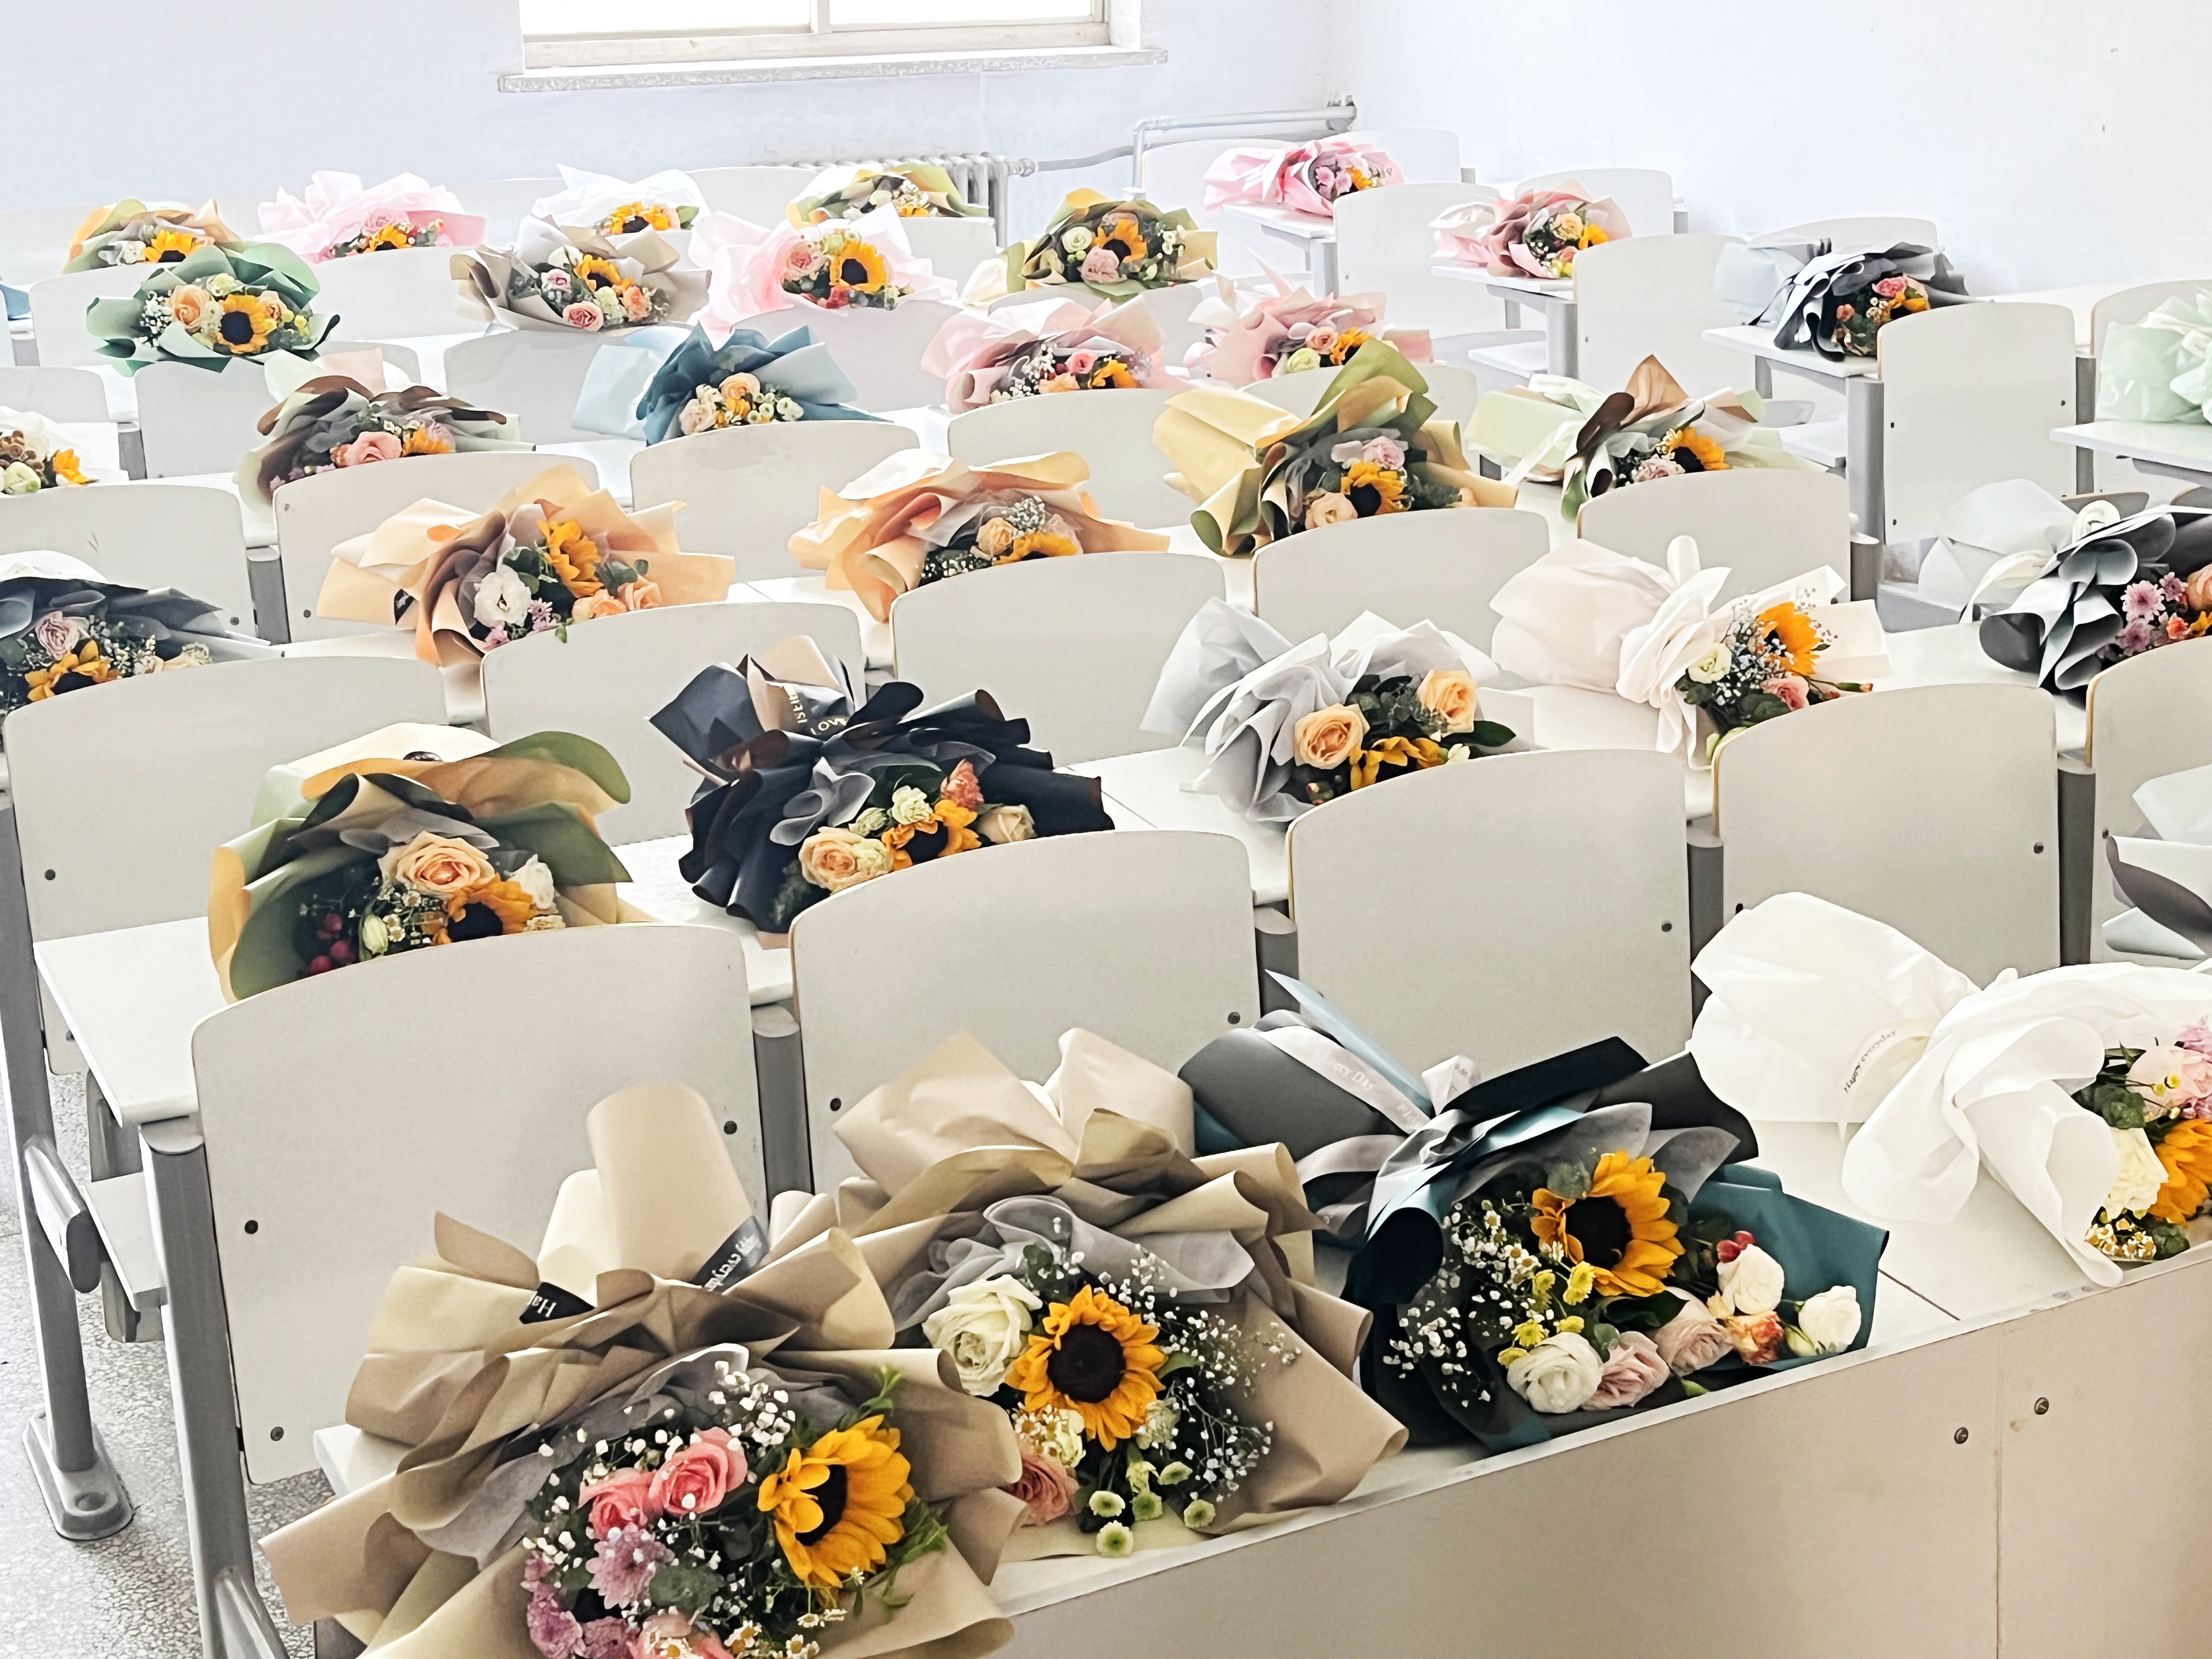 鄭州高校一班長自費給全班50名同學送花：不想再留下遺憾，想給同學們一些儀式感